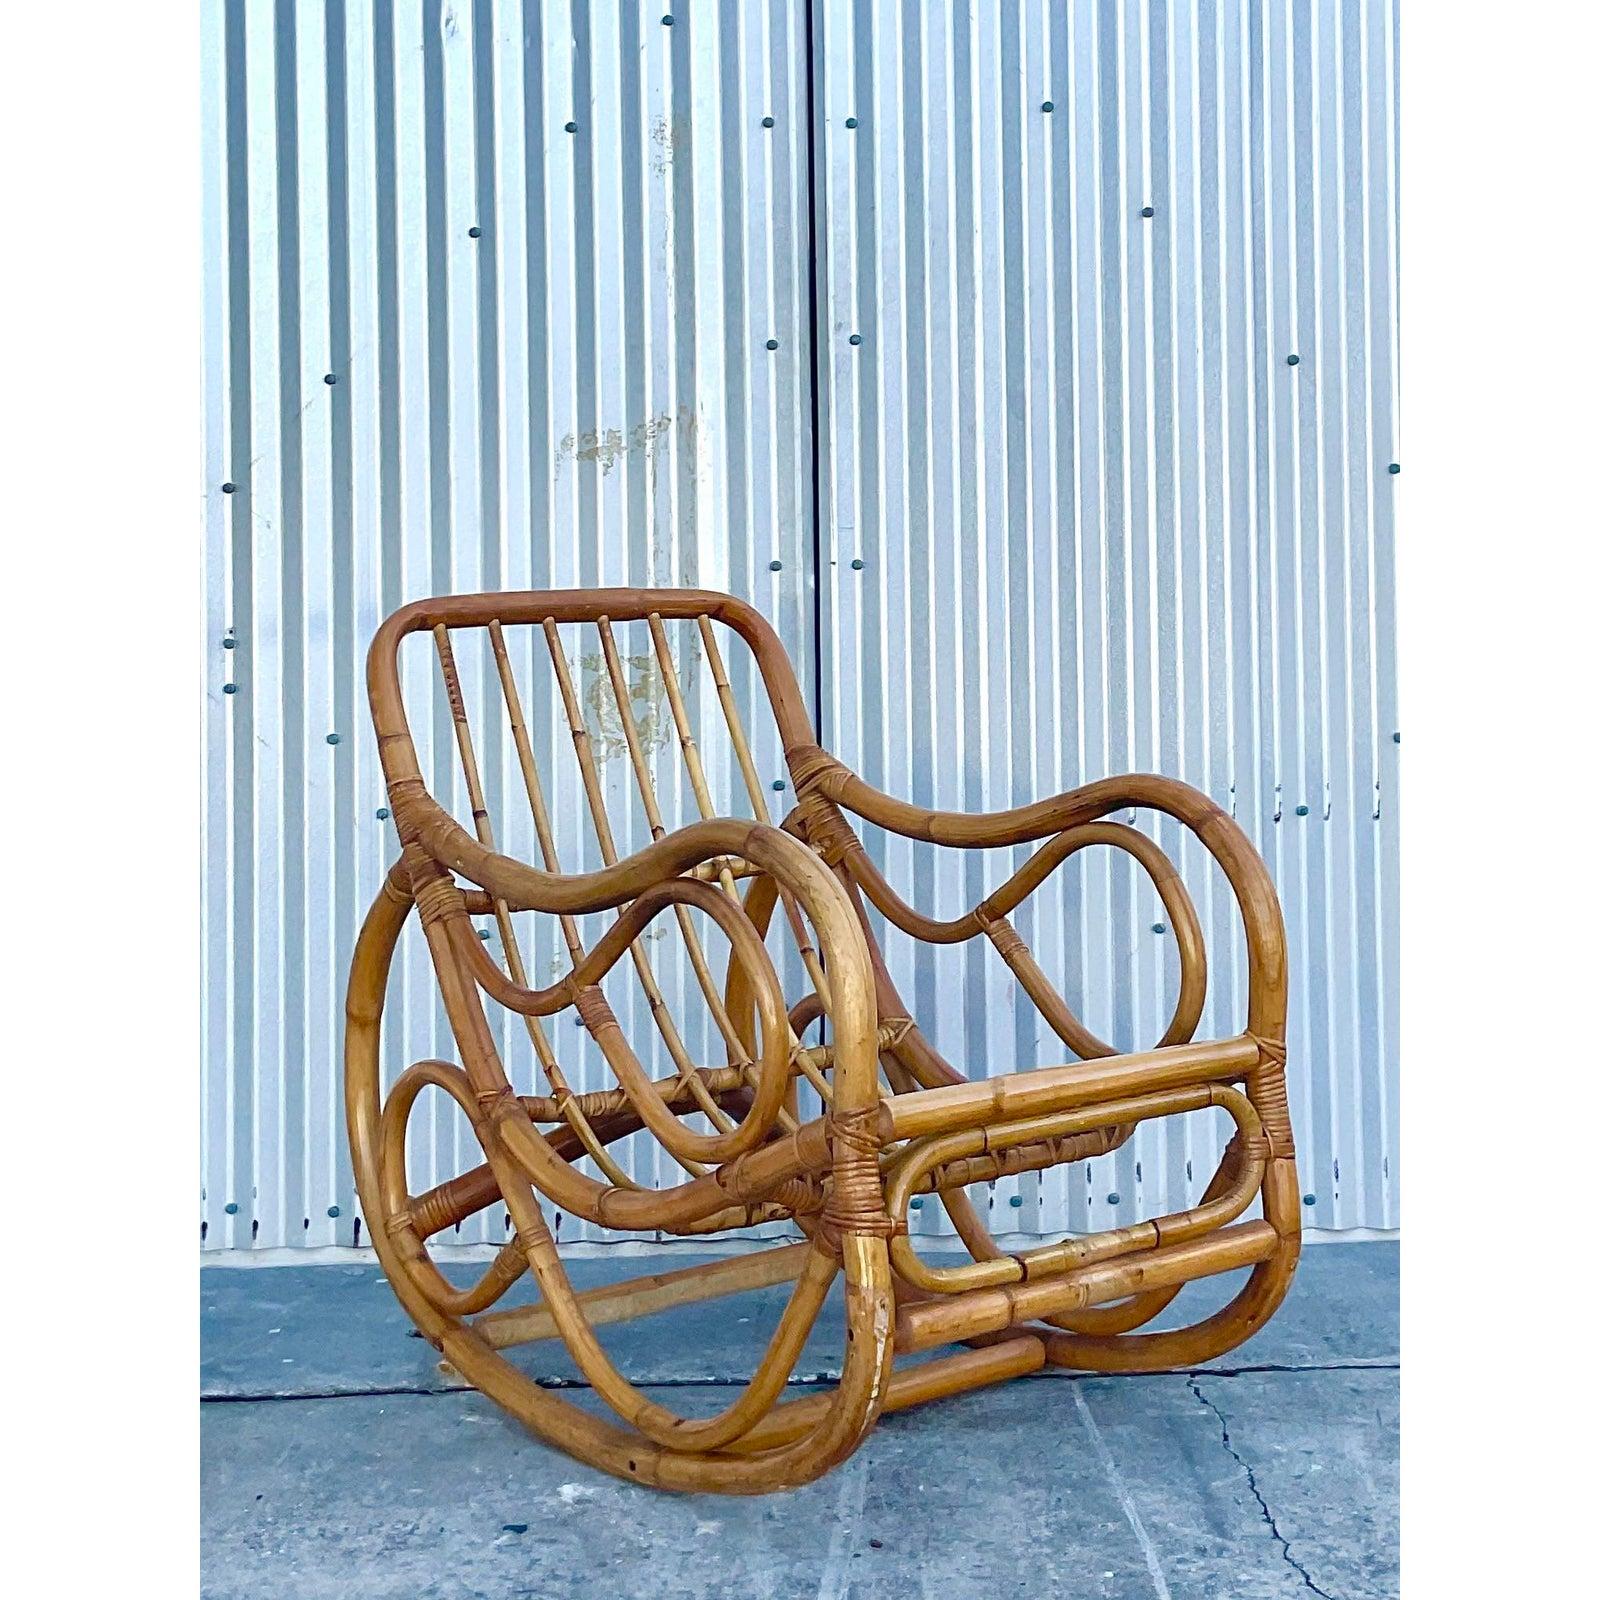 Fantastischer Vintage-Schaukelstuhl im Küstenstil. Dickes gebogenes Bambusholz im charmanten Boho-Design. Die tiefe Sitzfläche macht diesen Sessel zu einem echten Ziel für entspannende Momente. Erworben aus einem Nachlass in NY.